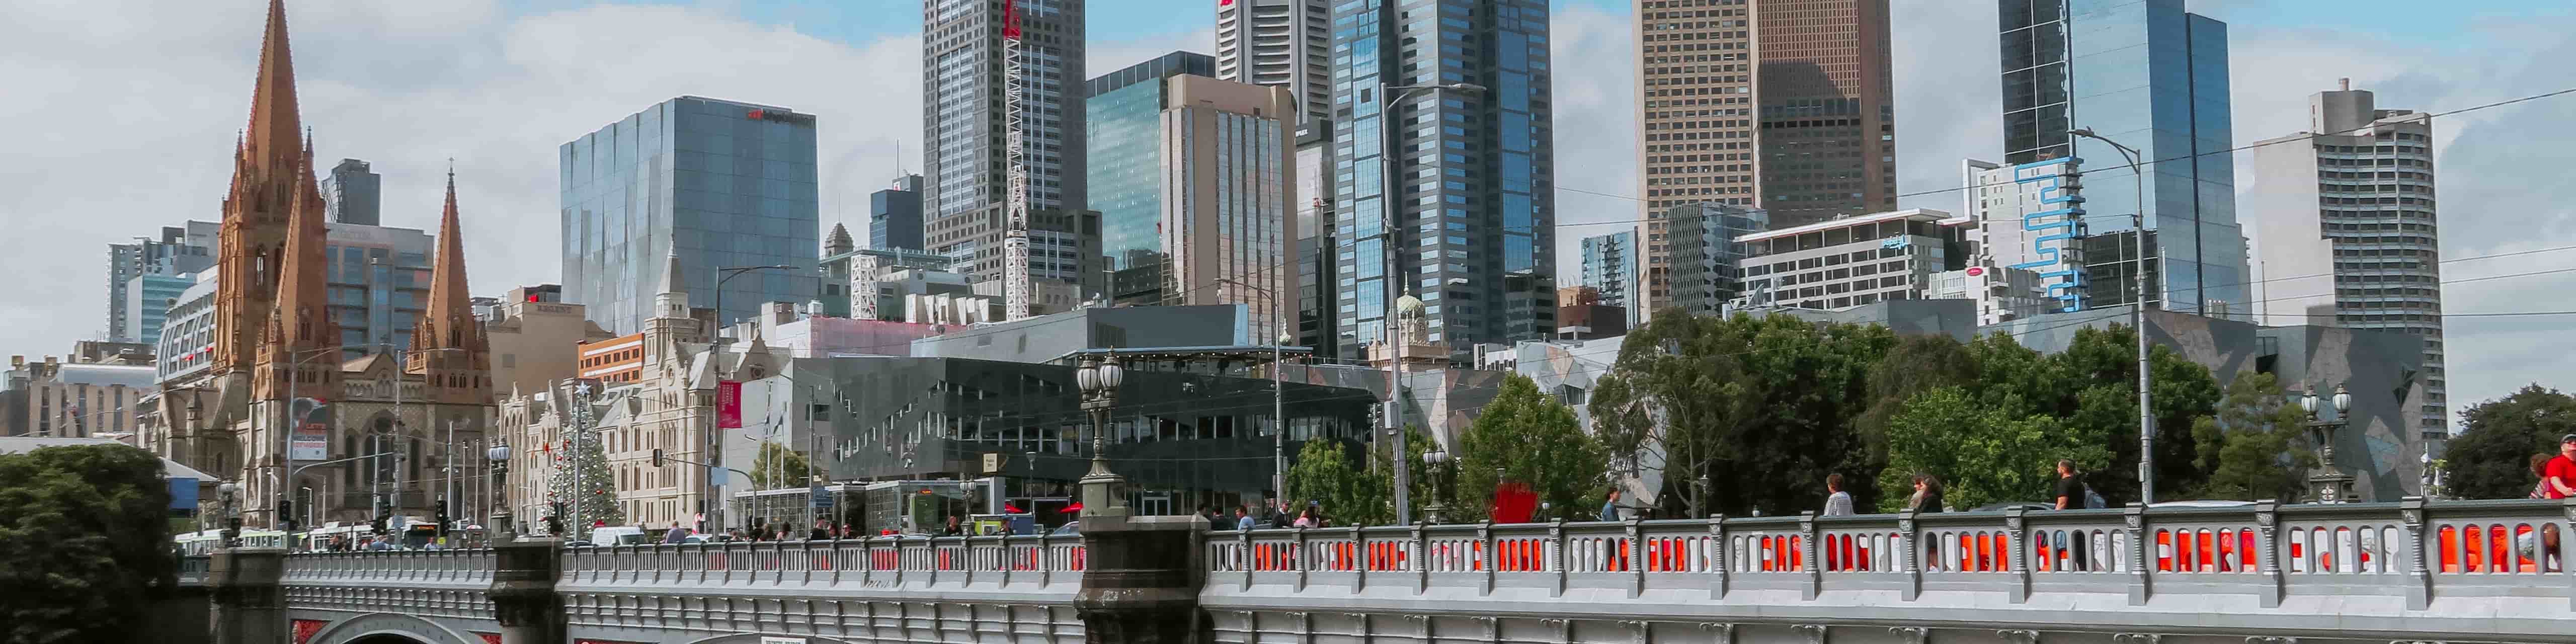 CITY BUILDINGS MELBOURNE AUSTRALIA